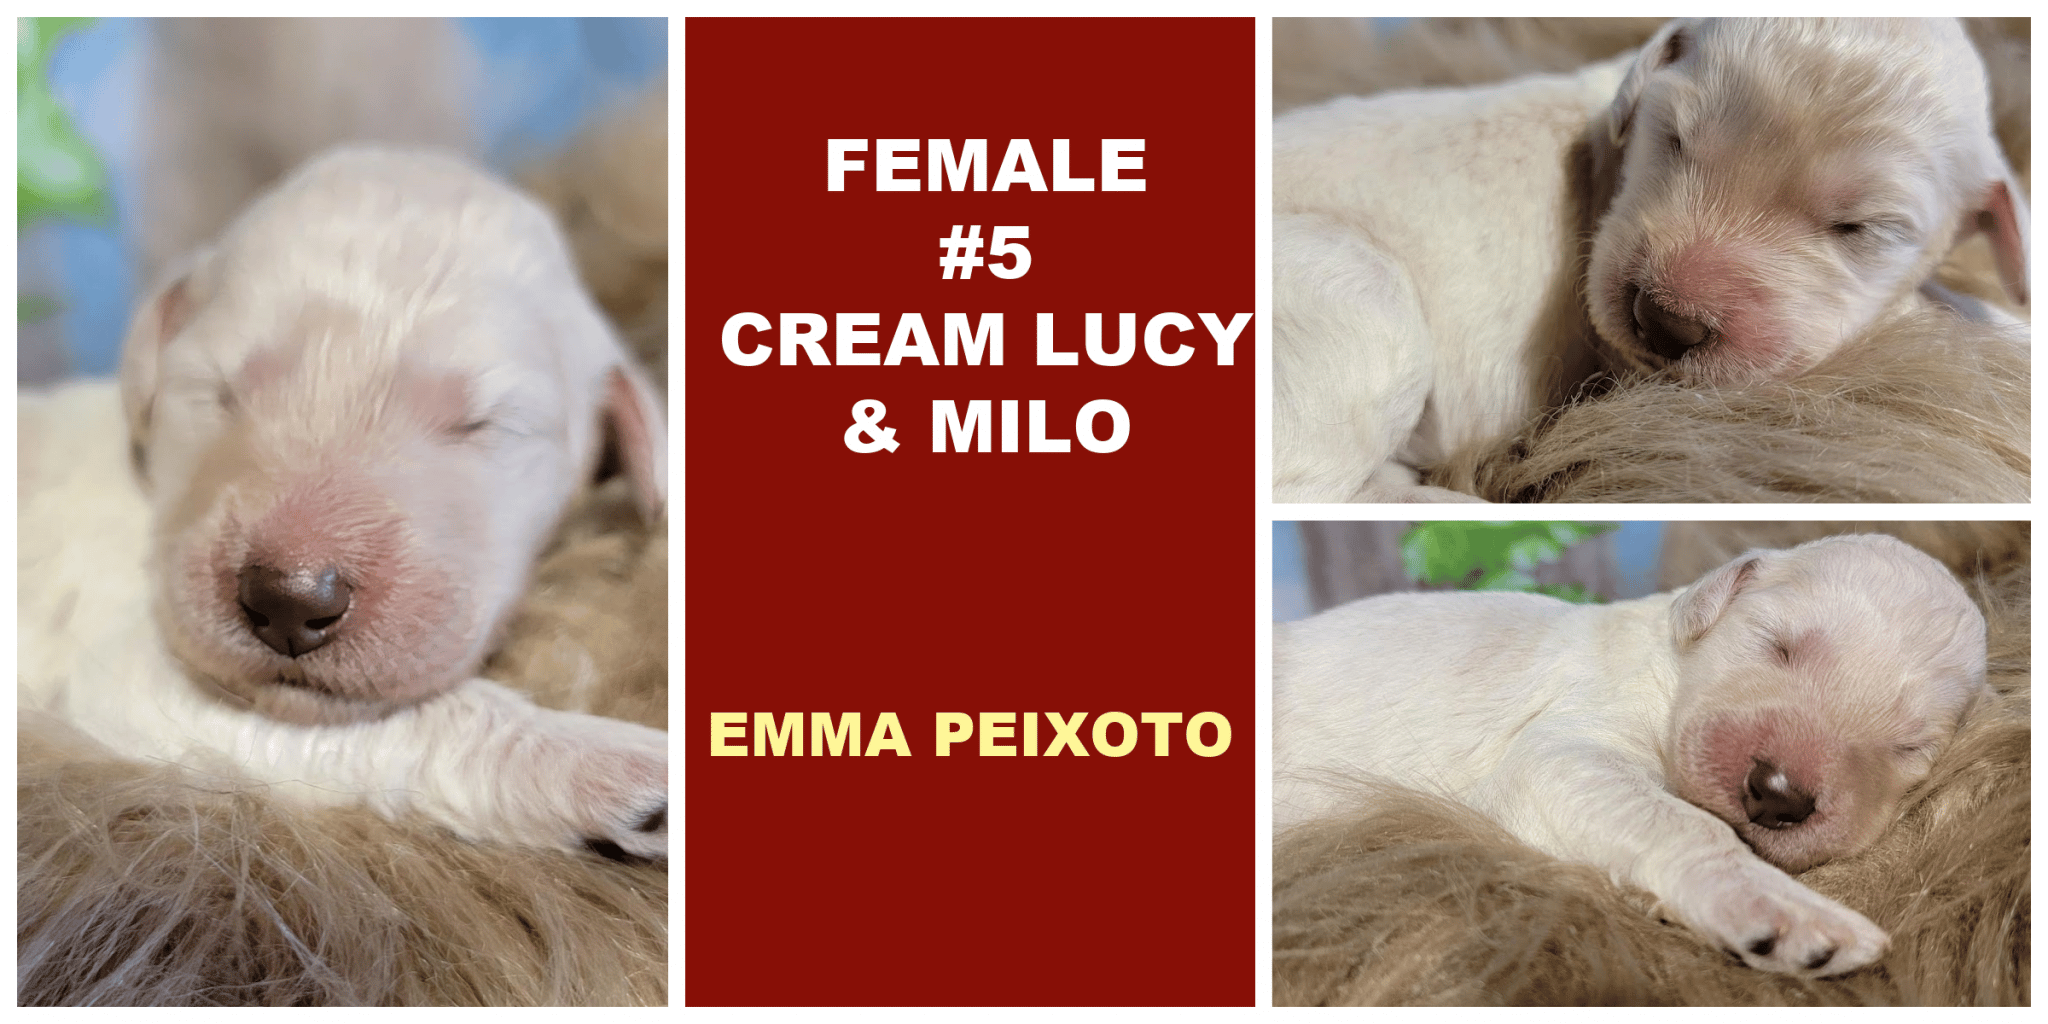 FEMALE 5 CREAM LUCY MILO